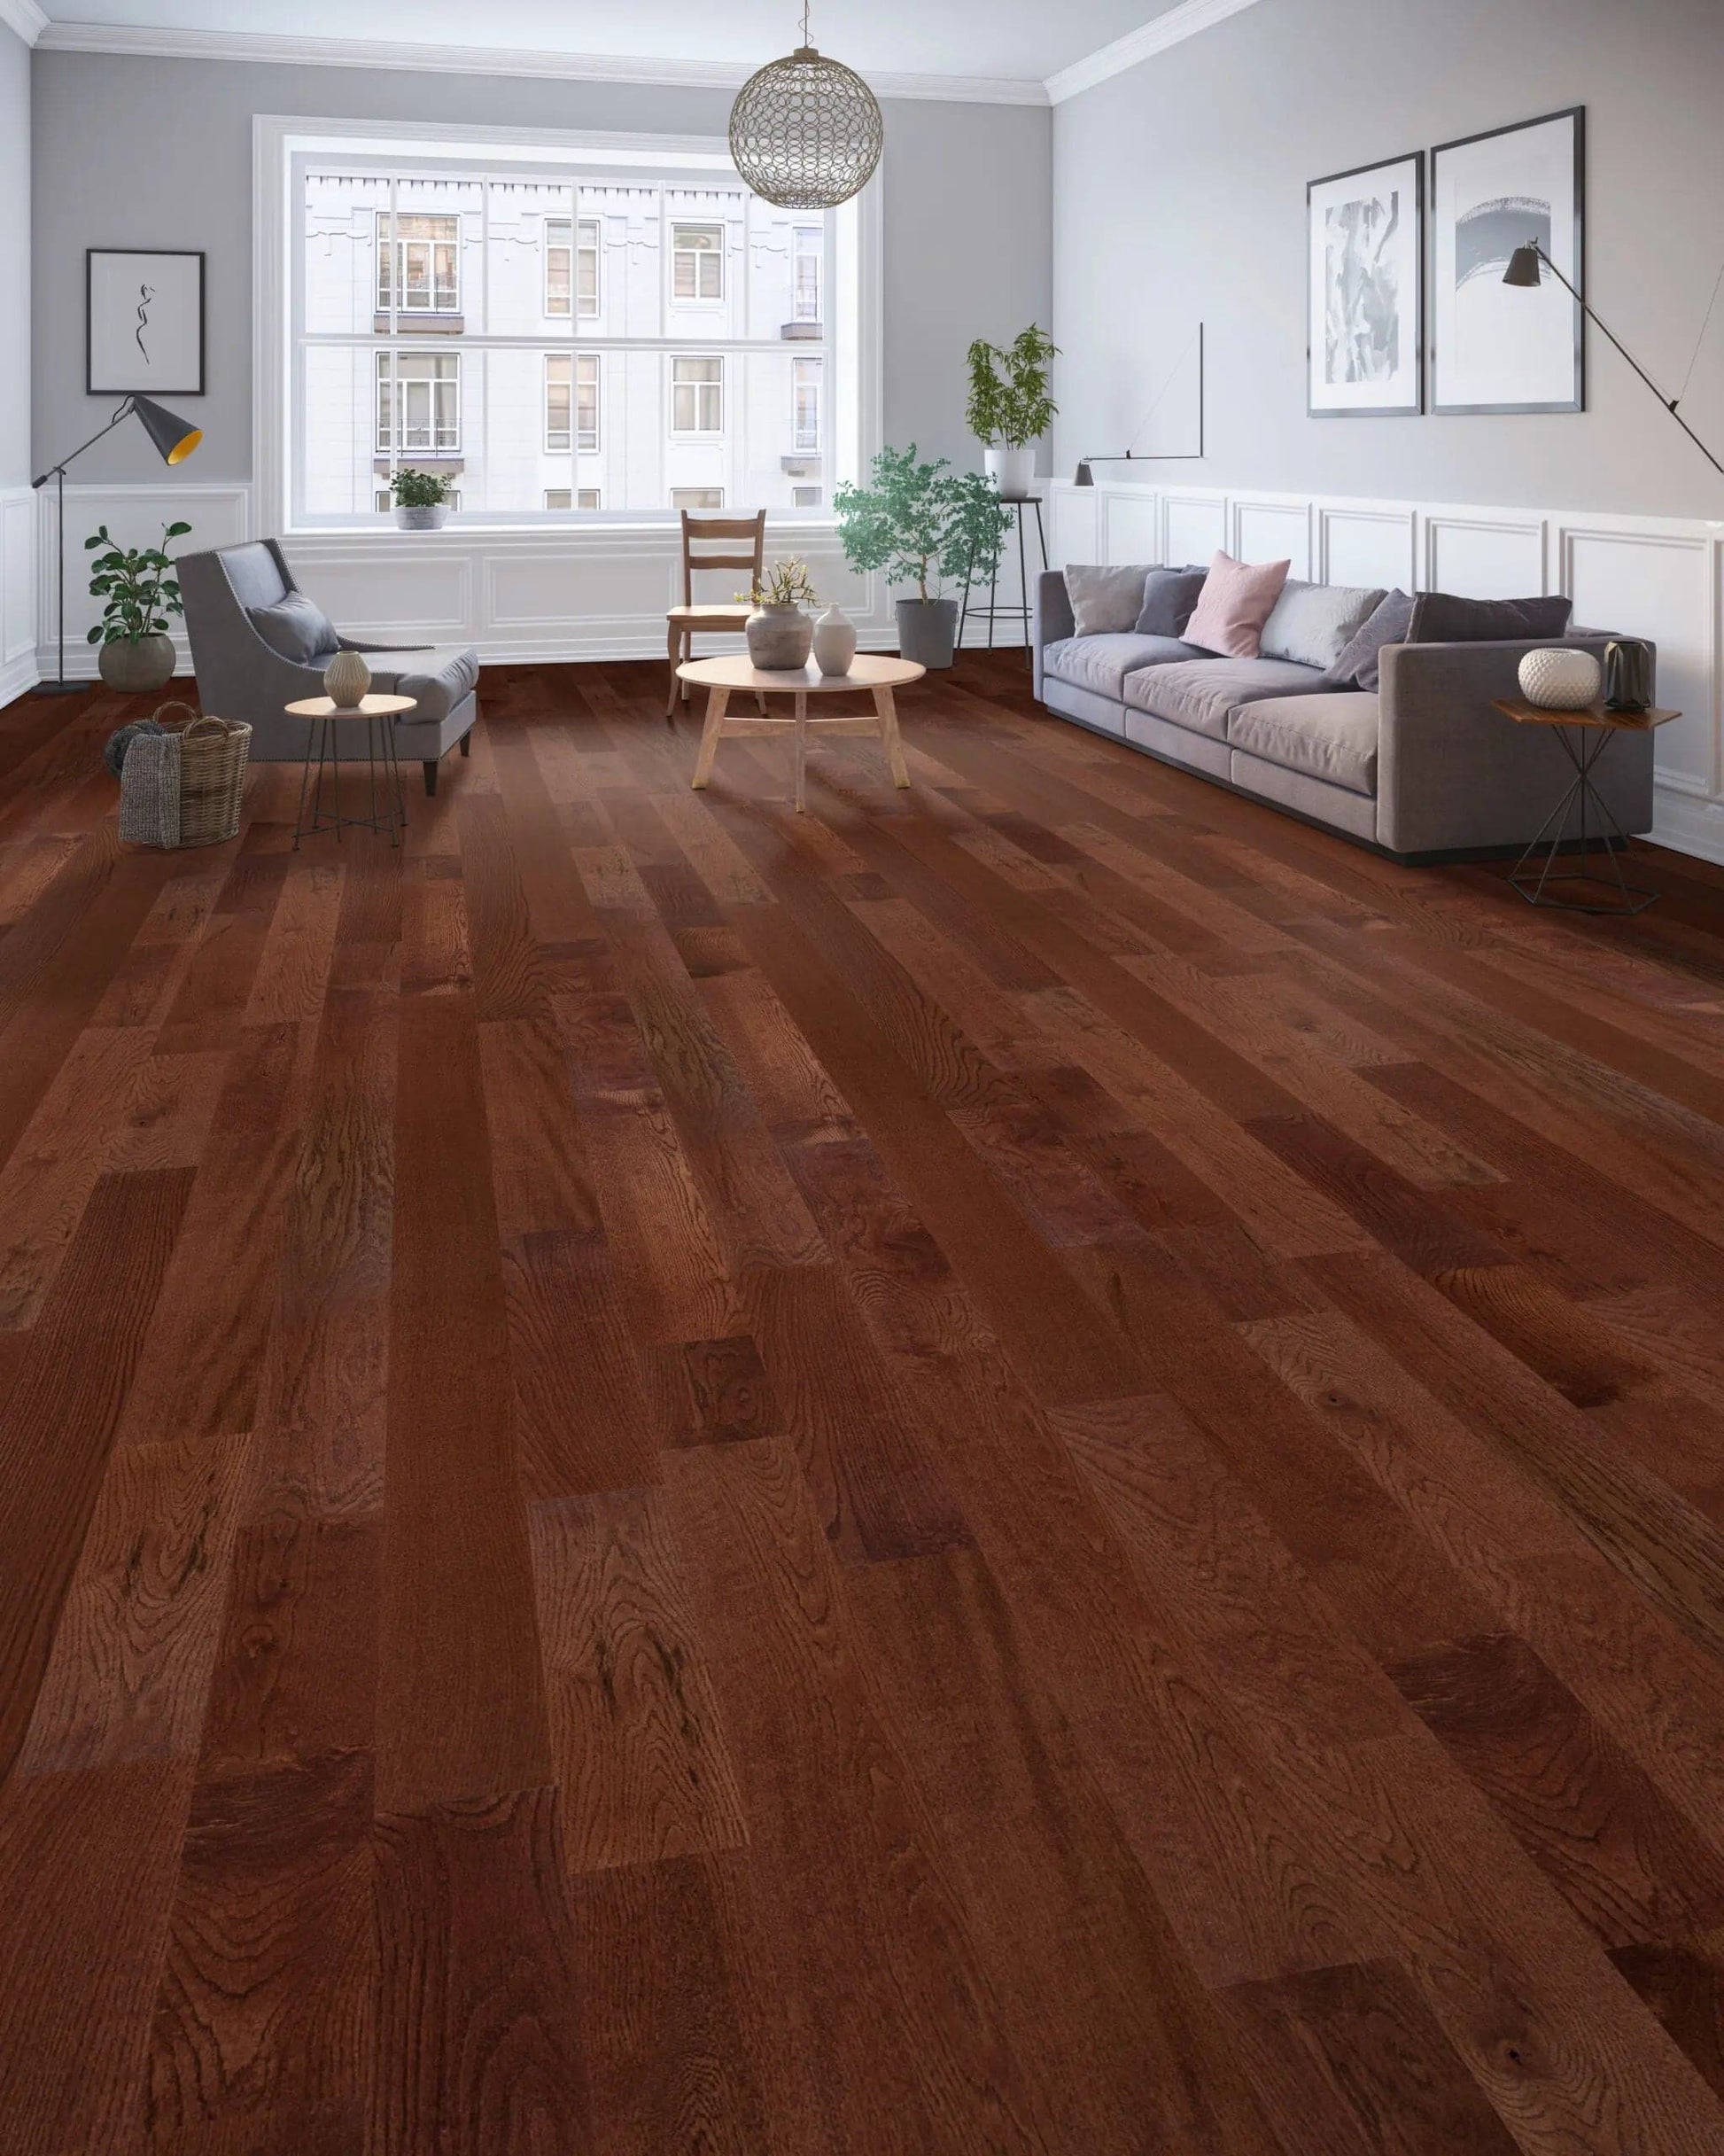 Oak Cherry 3/4 x 3-1/4" Solid Hardwood Flooring - 27 sqft/ctn Elk Mountain